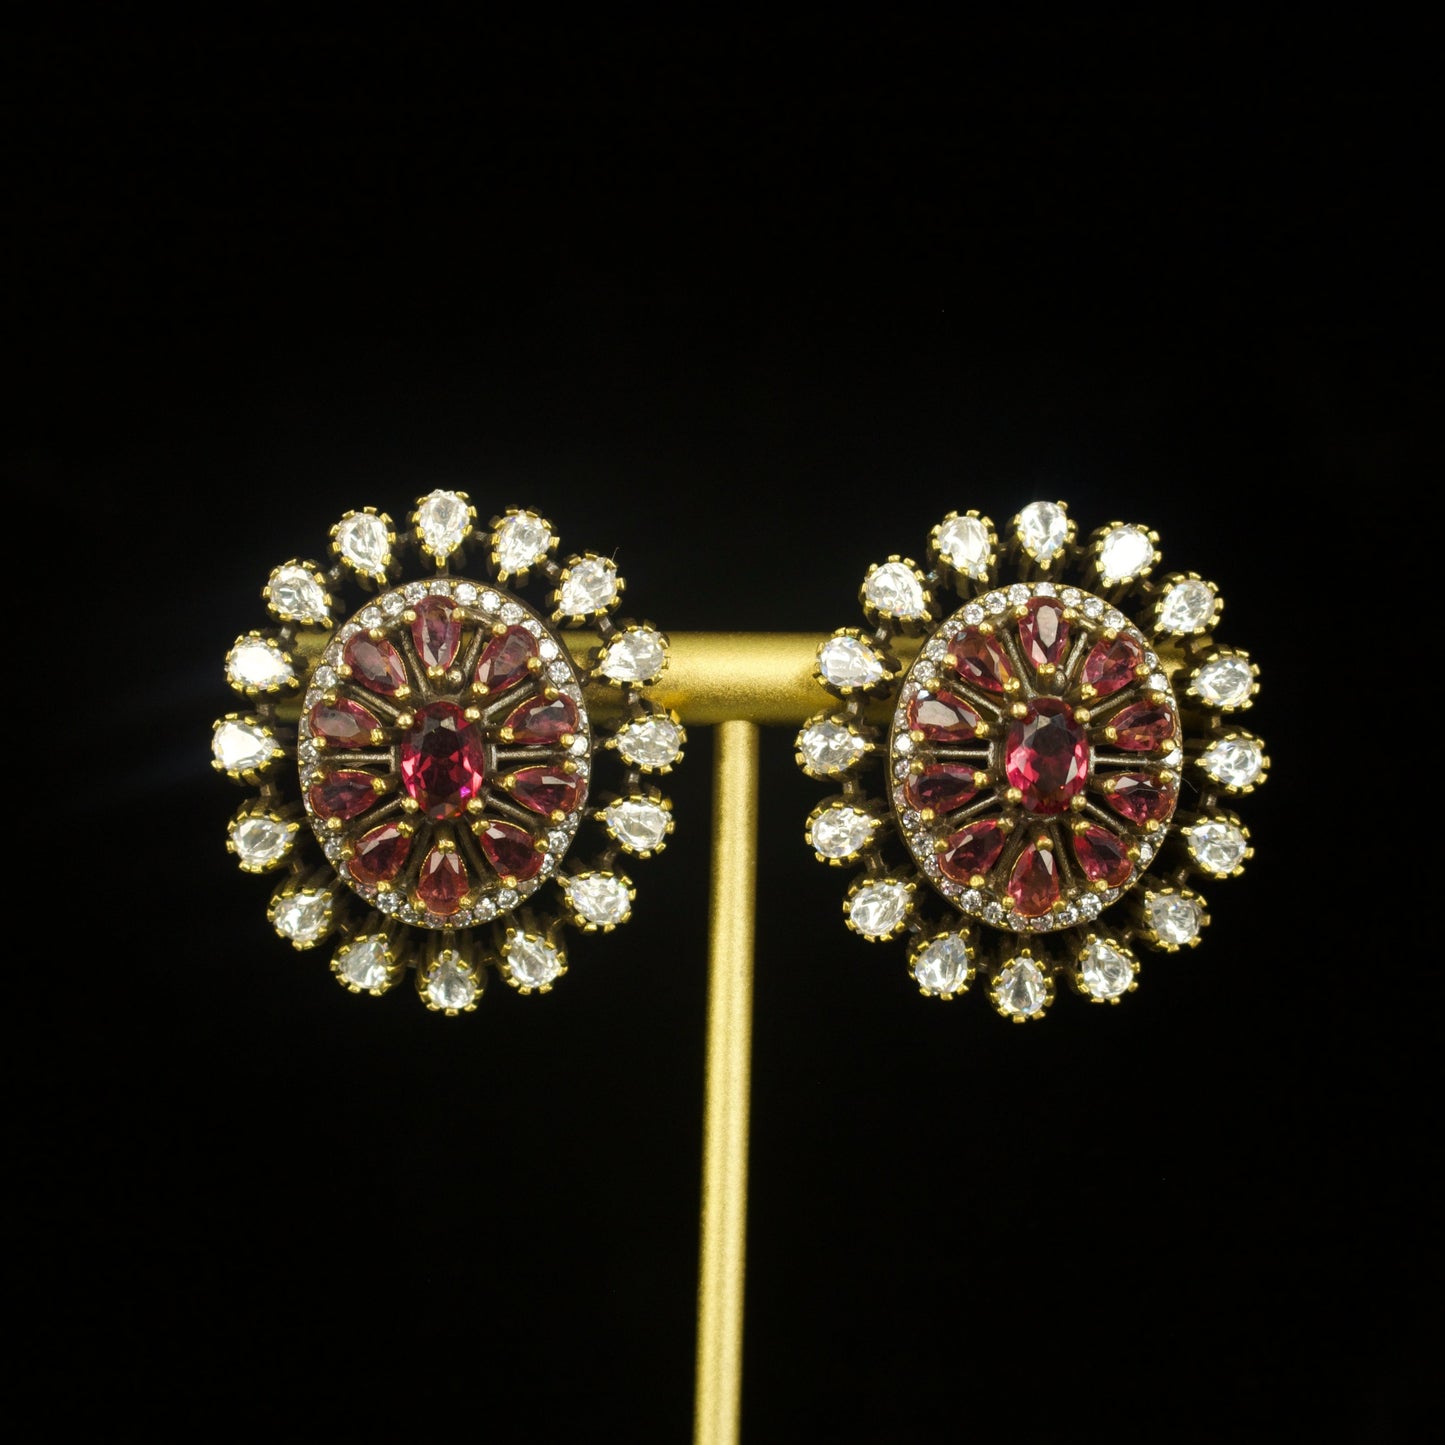 Glistening Victorian Stud earrings in screw back style